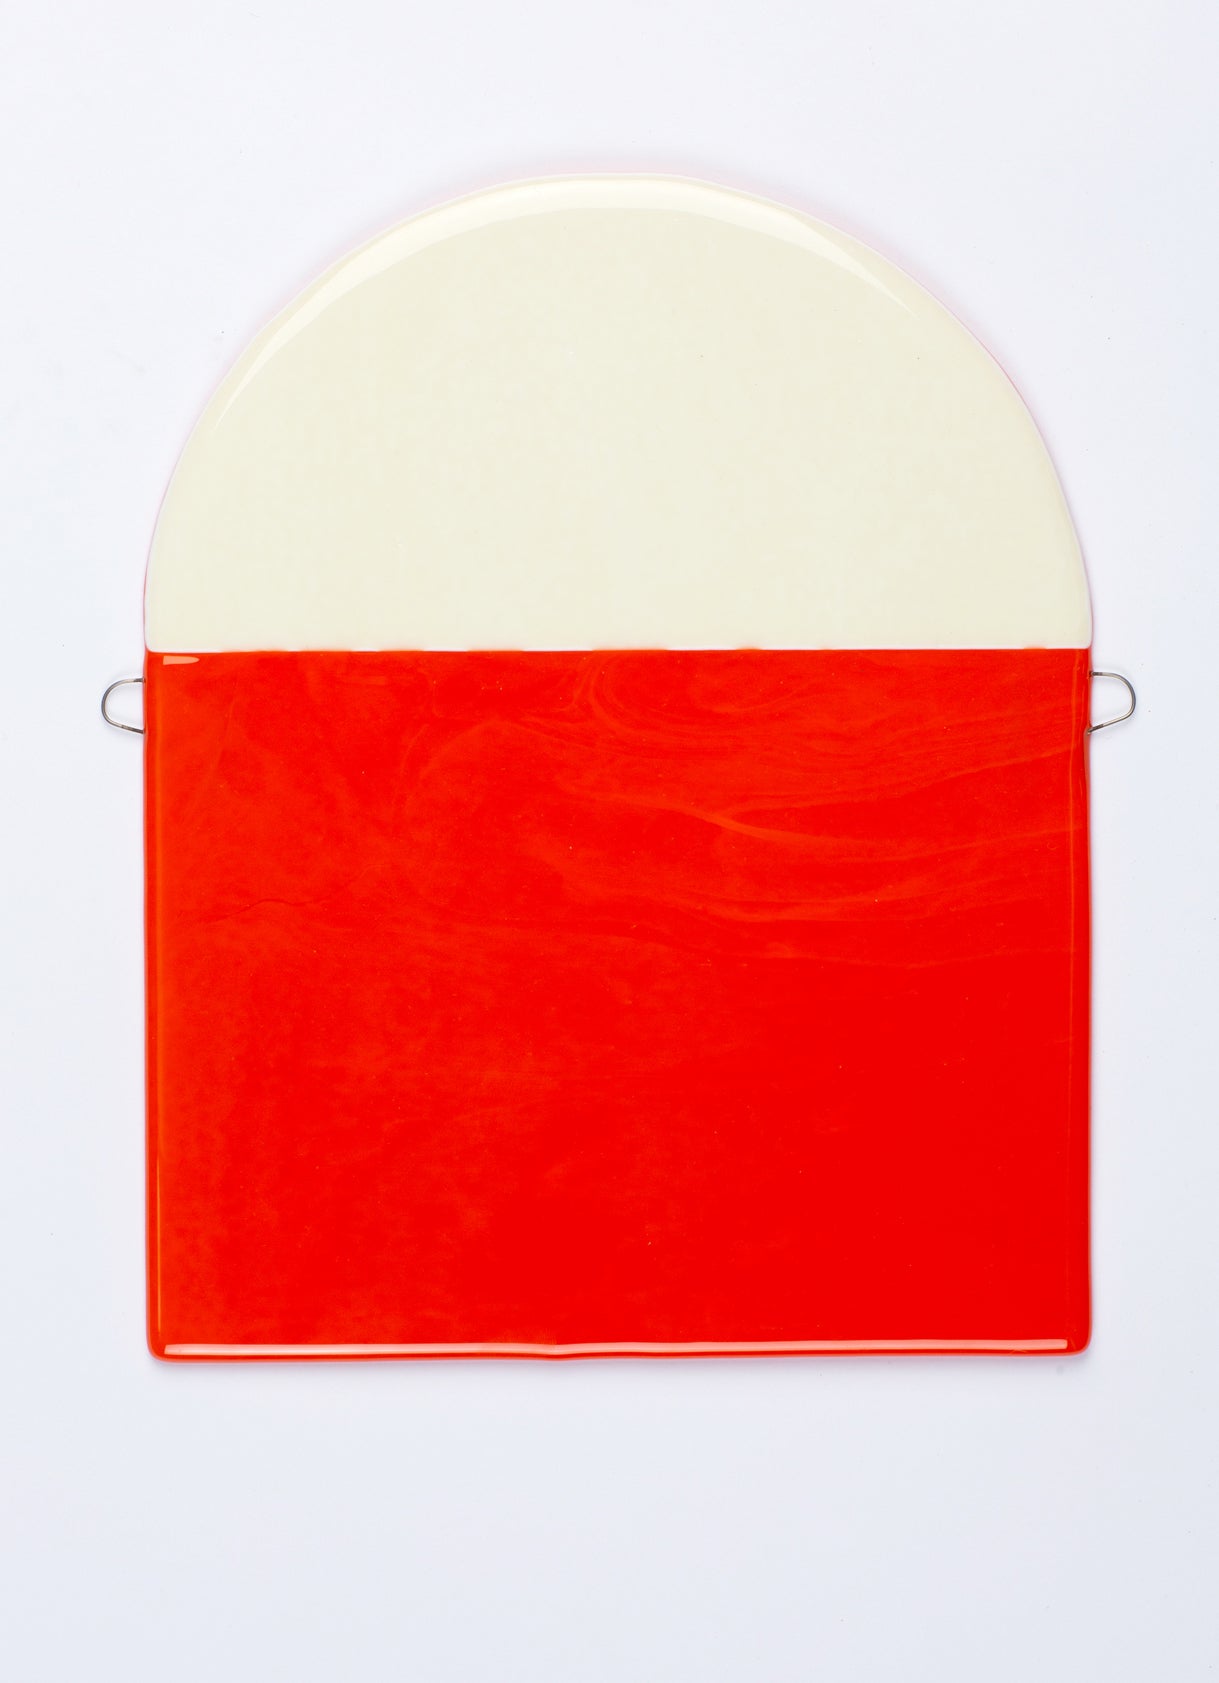 Solveig Lønseth - "Døgn" (037), fusjonert glass, 30 x 24 cm.